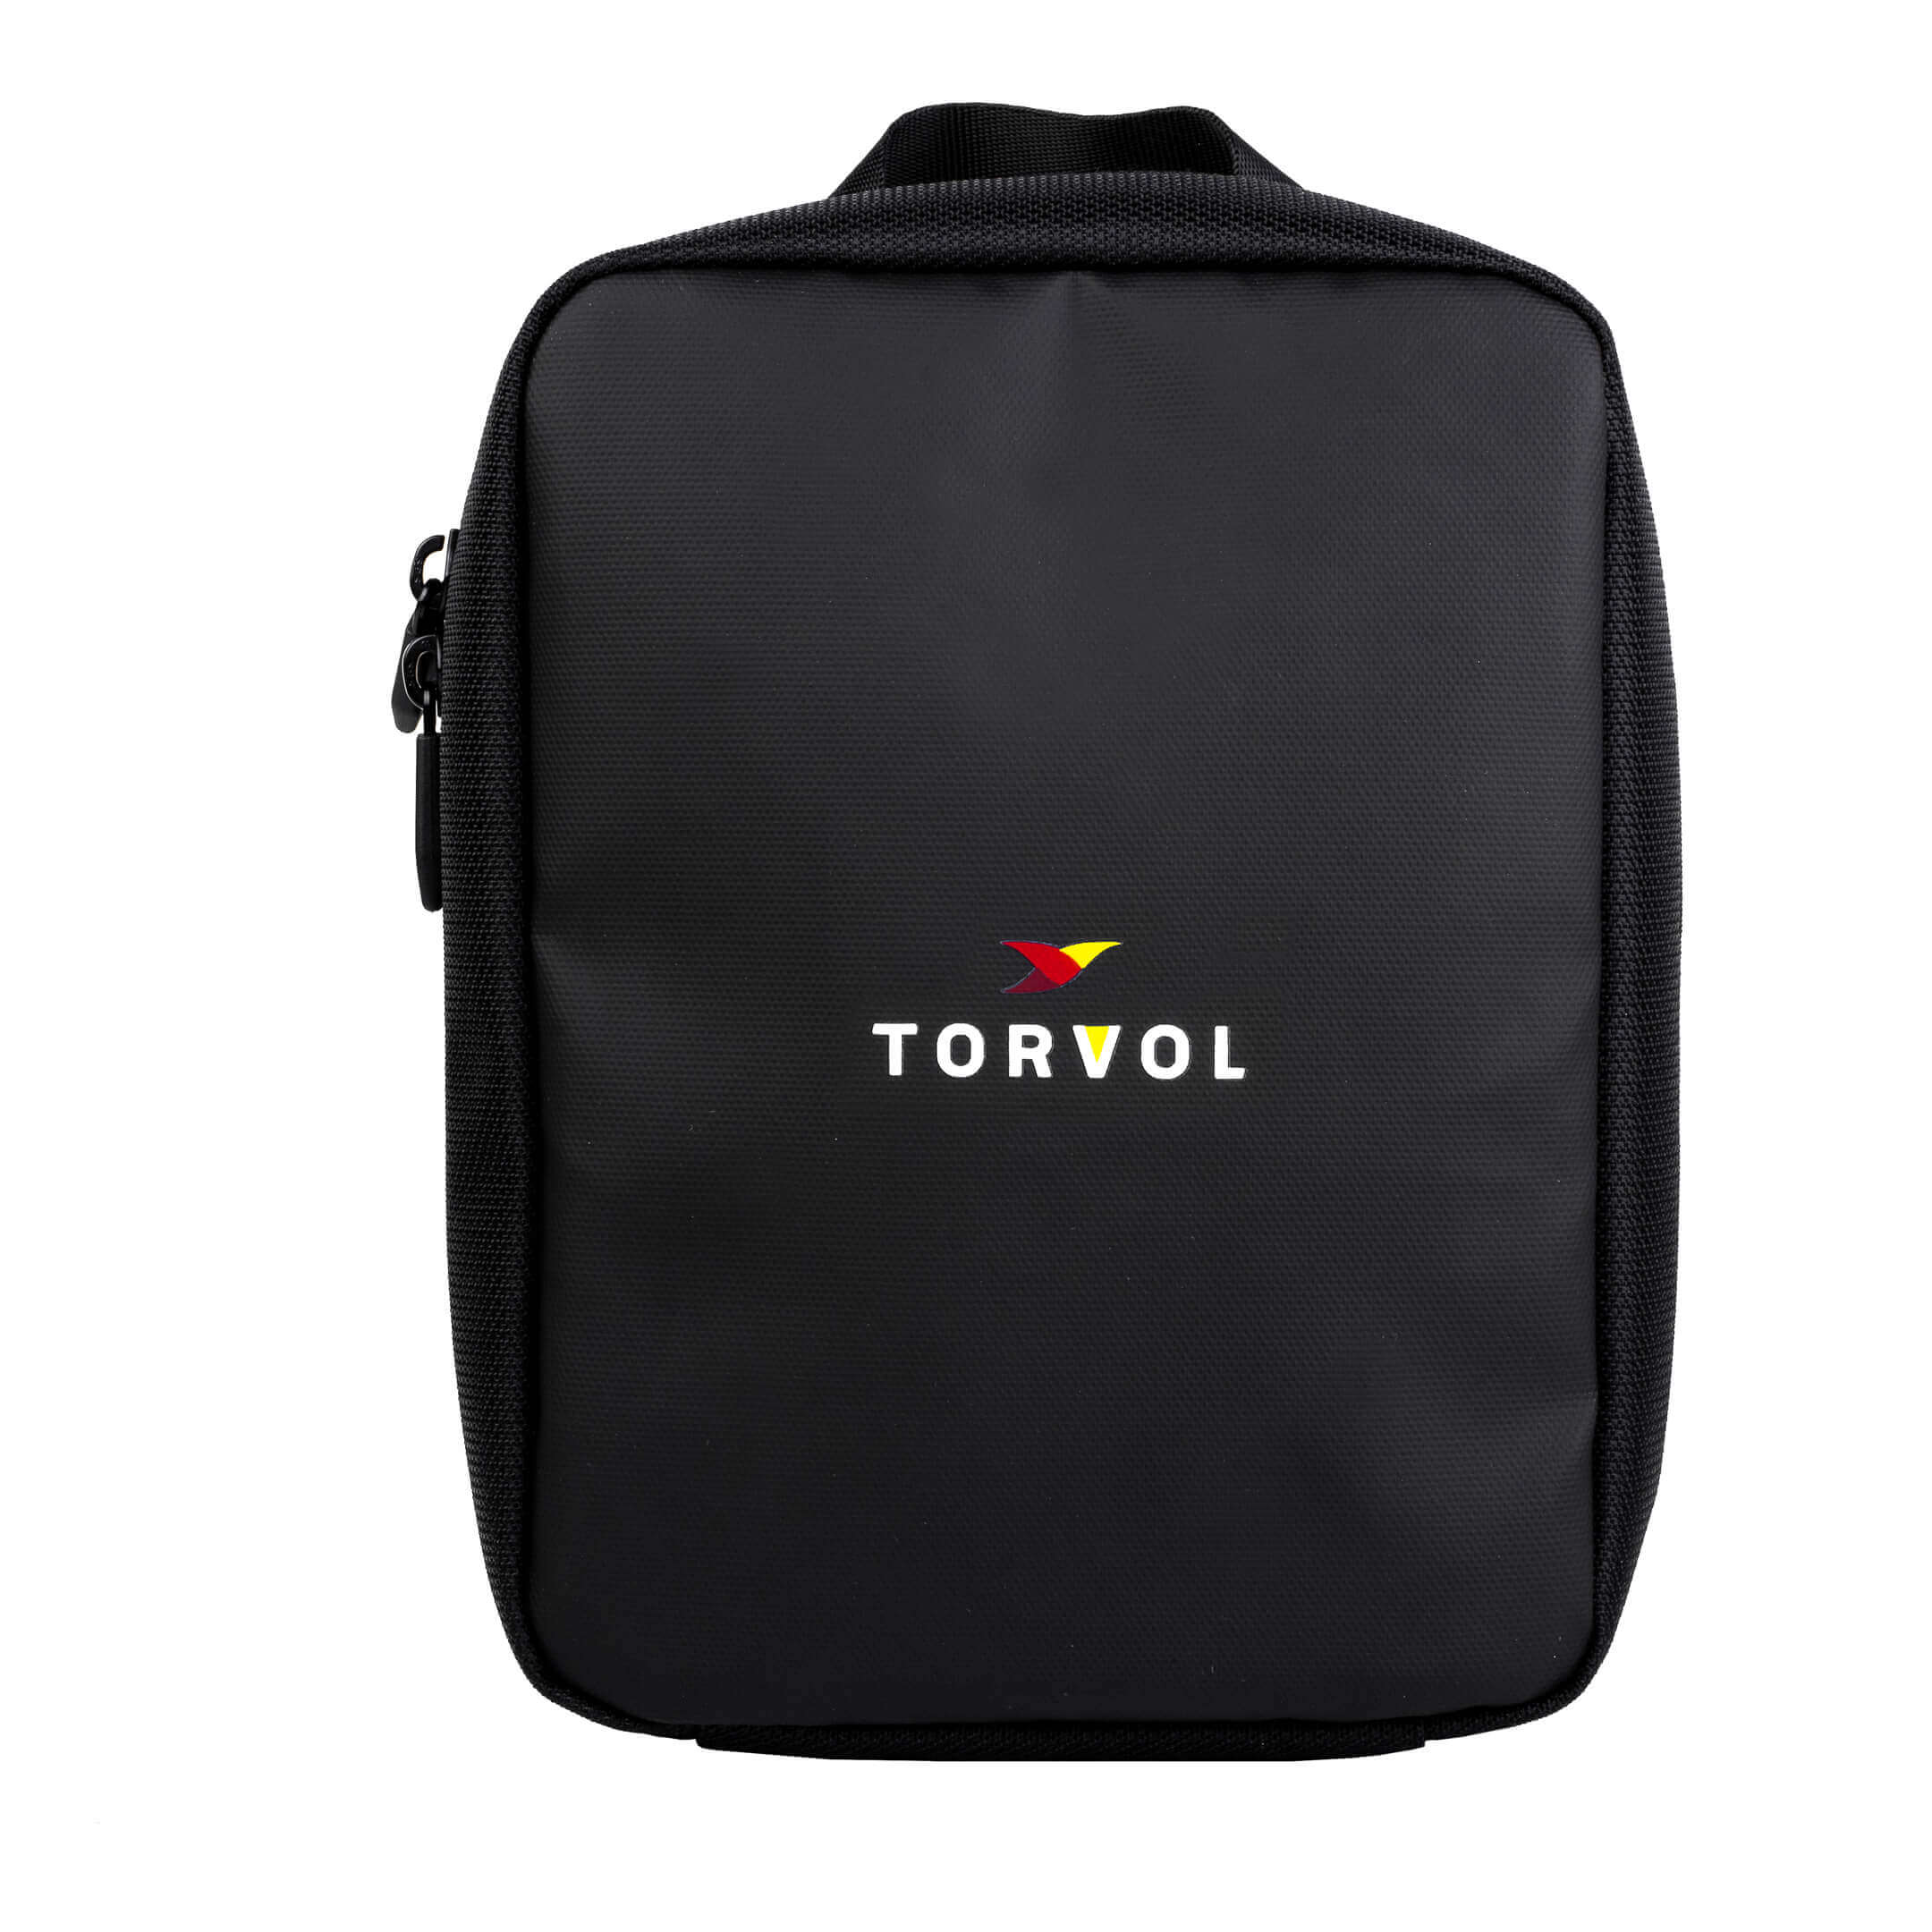 Torvol FPV Racing Tasche Organizer Pouch für Urban Carrier Rucksack